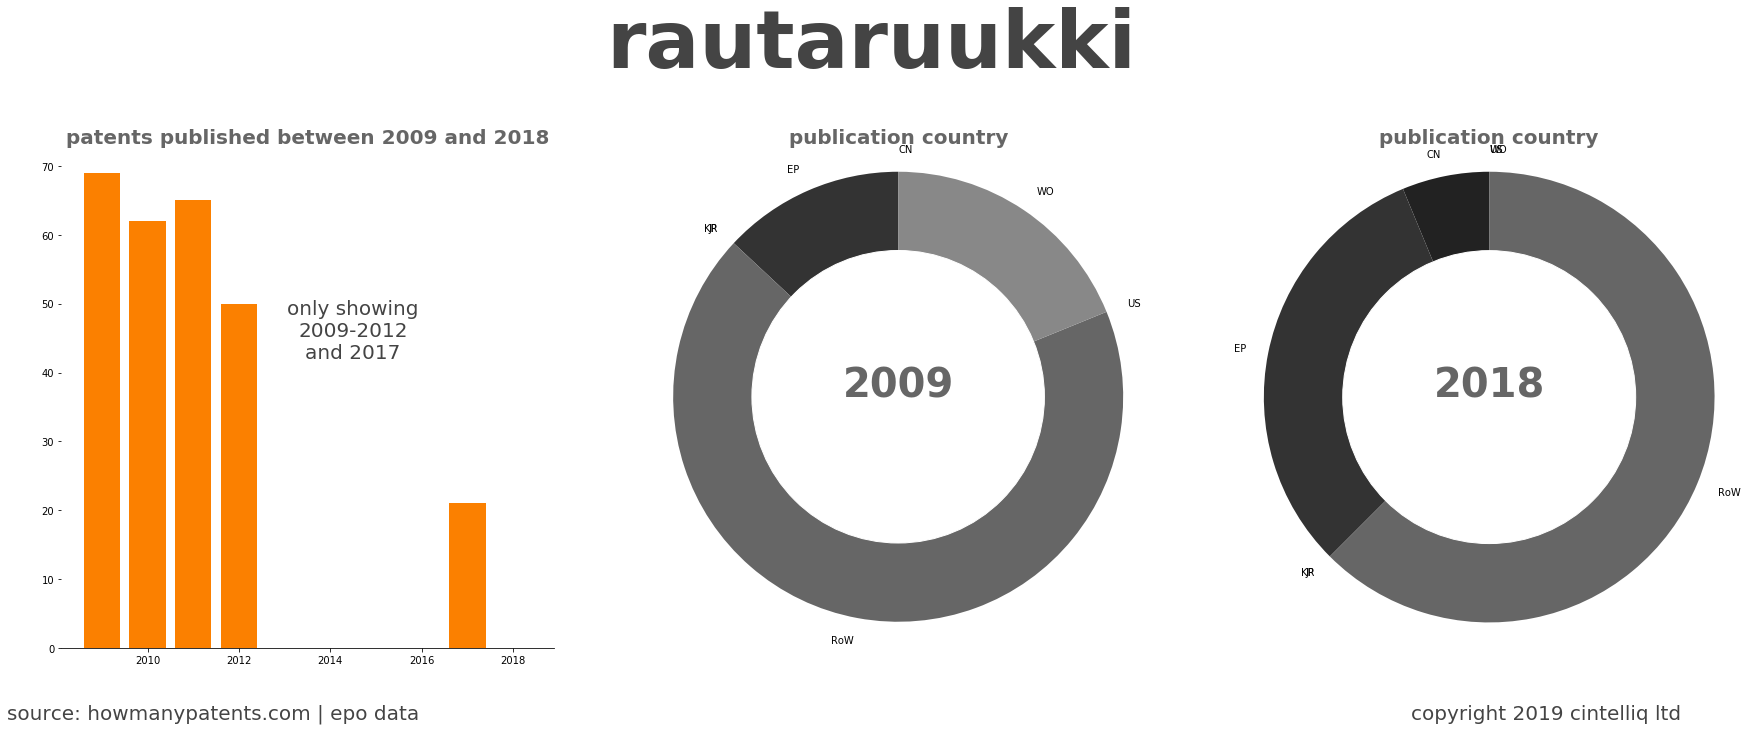 summary of patents for Rautaruukki